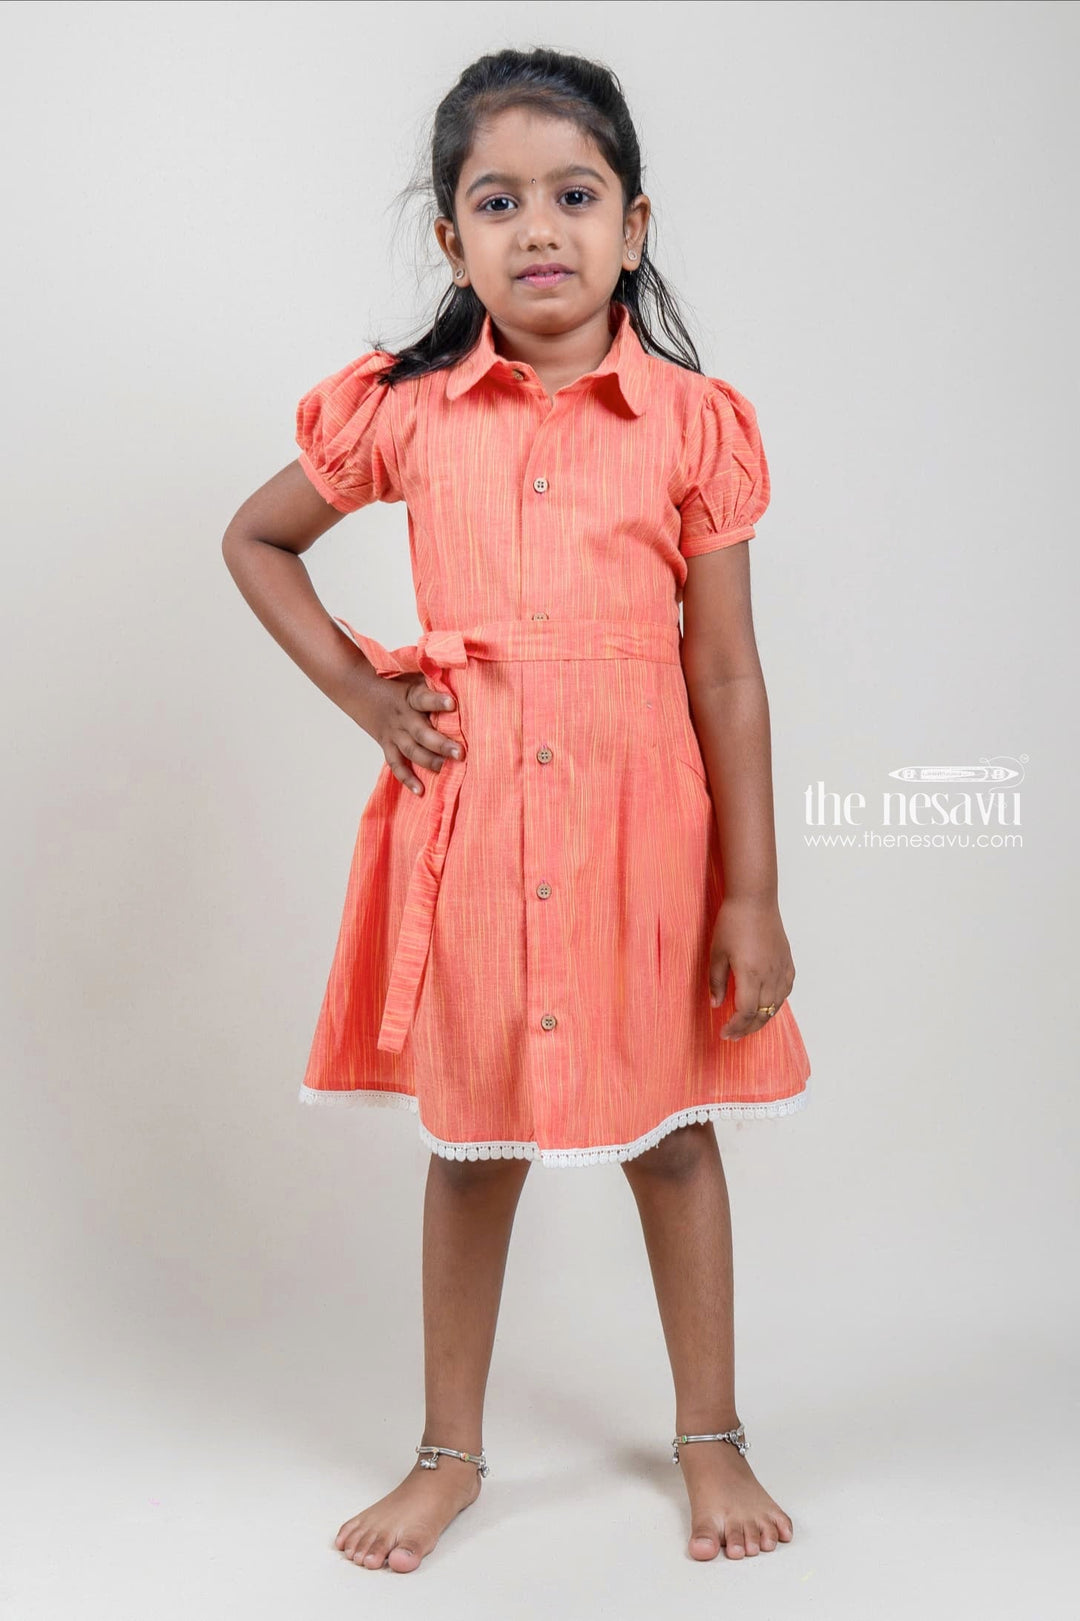 The Nesavu Girls Cotton Frock Shirt Collar Tunic Play wear Cotton Frock Nesavu 14 (6M) / Orange / Cotton GFC975B-14 Chinna Pillala Frocks| Cotton Frocks Designs| The Nesavu